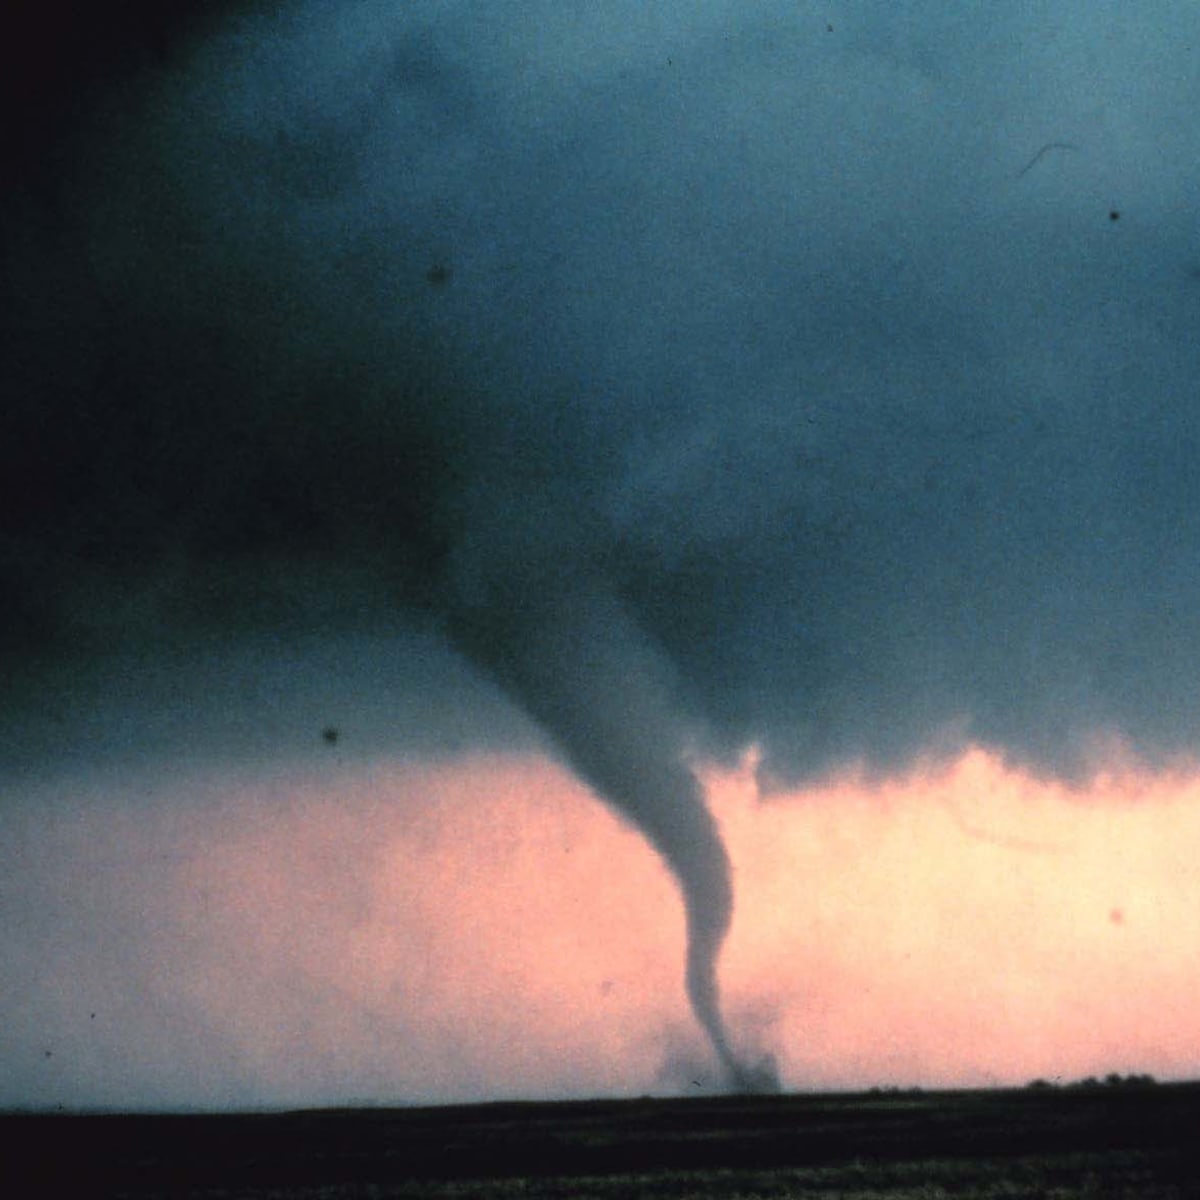 natural disasters real tornado